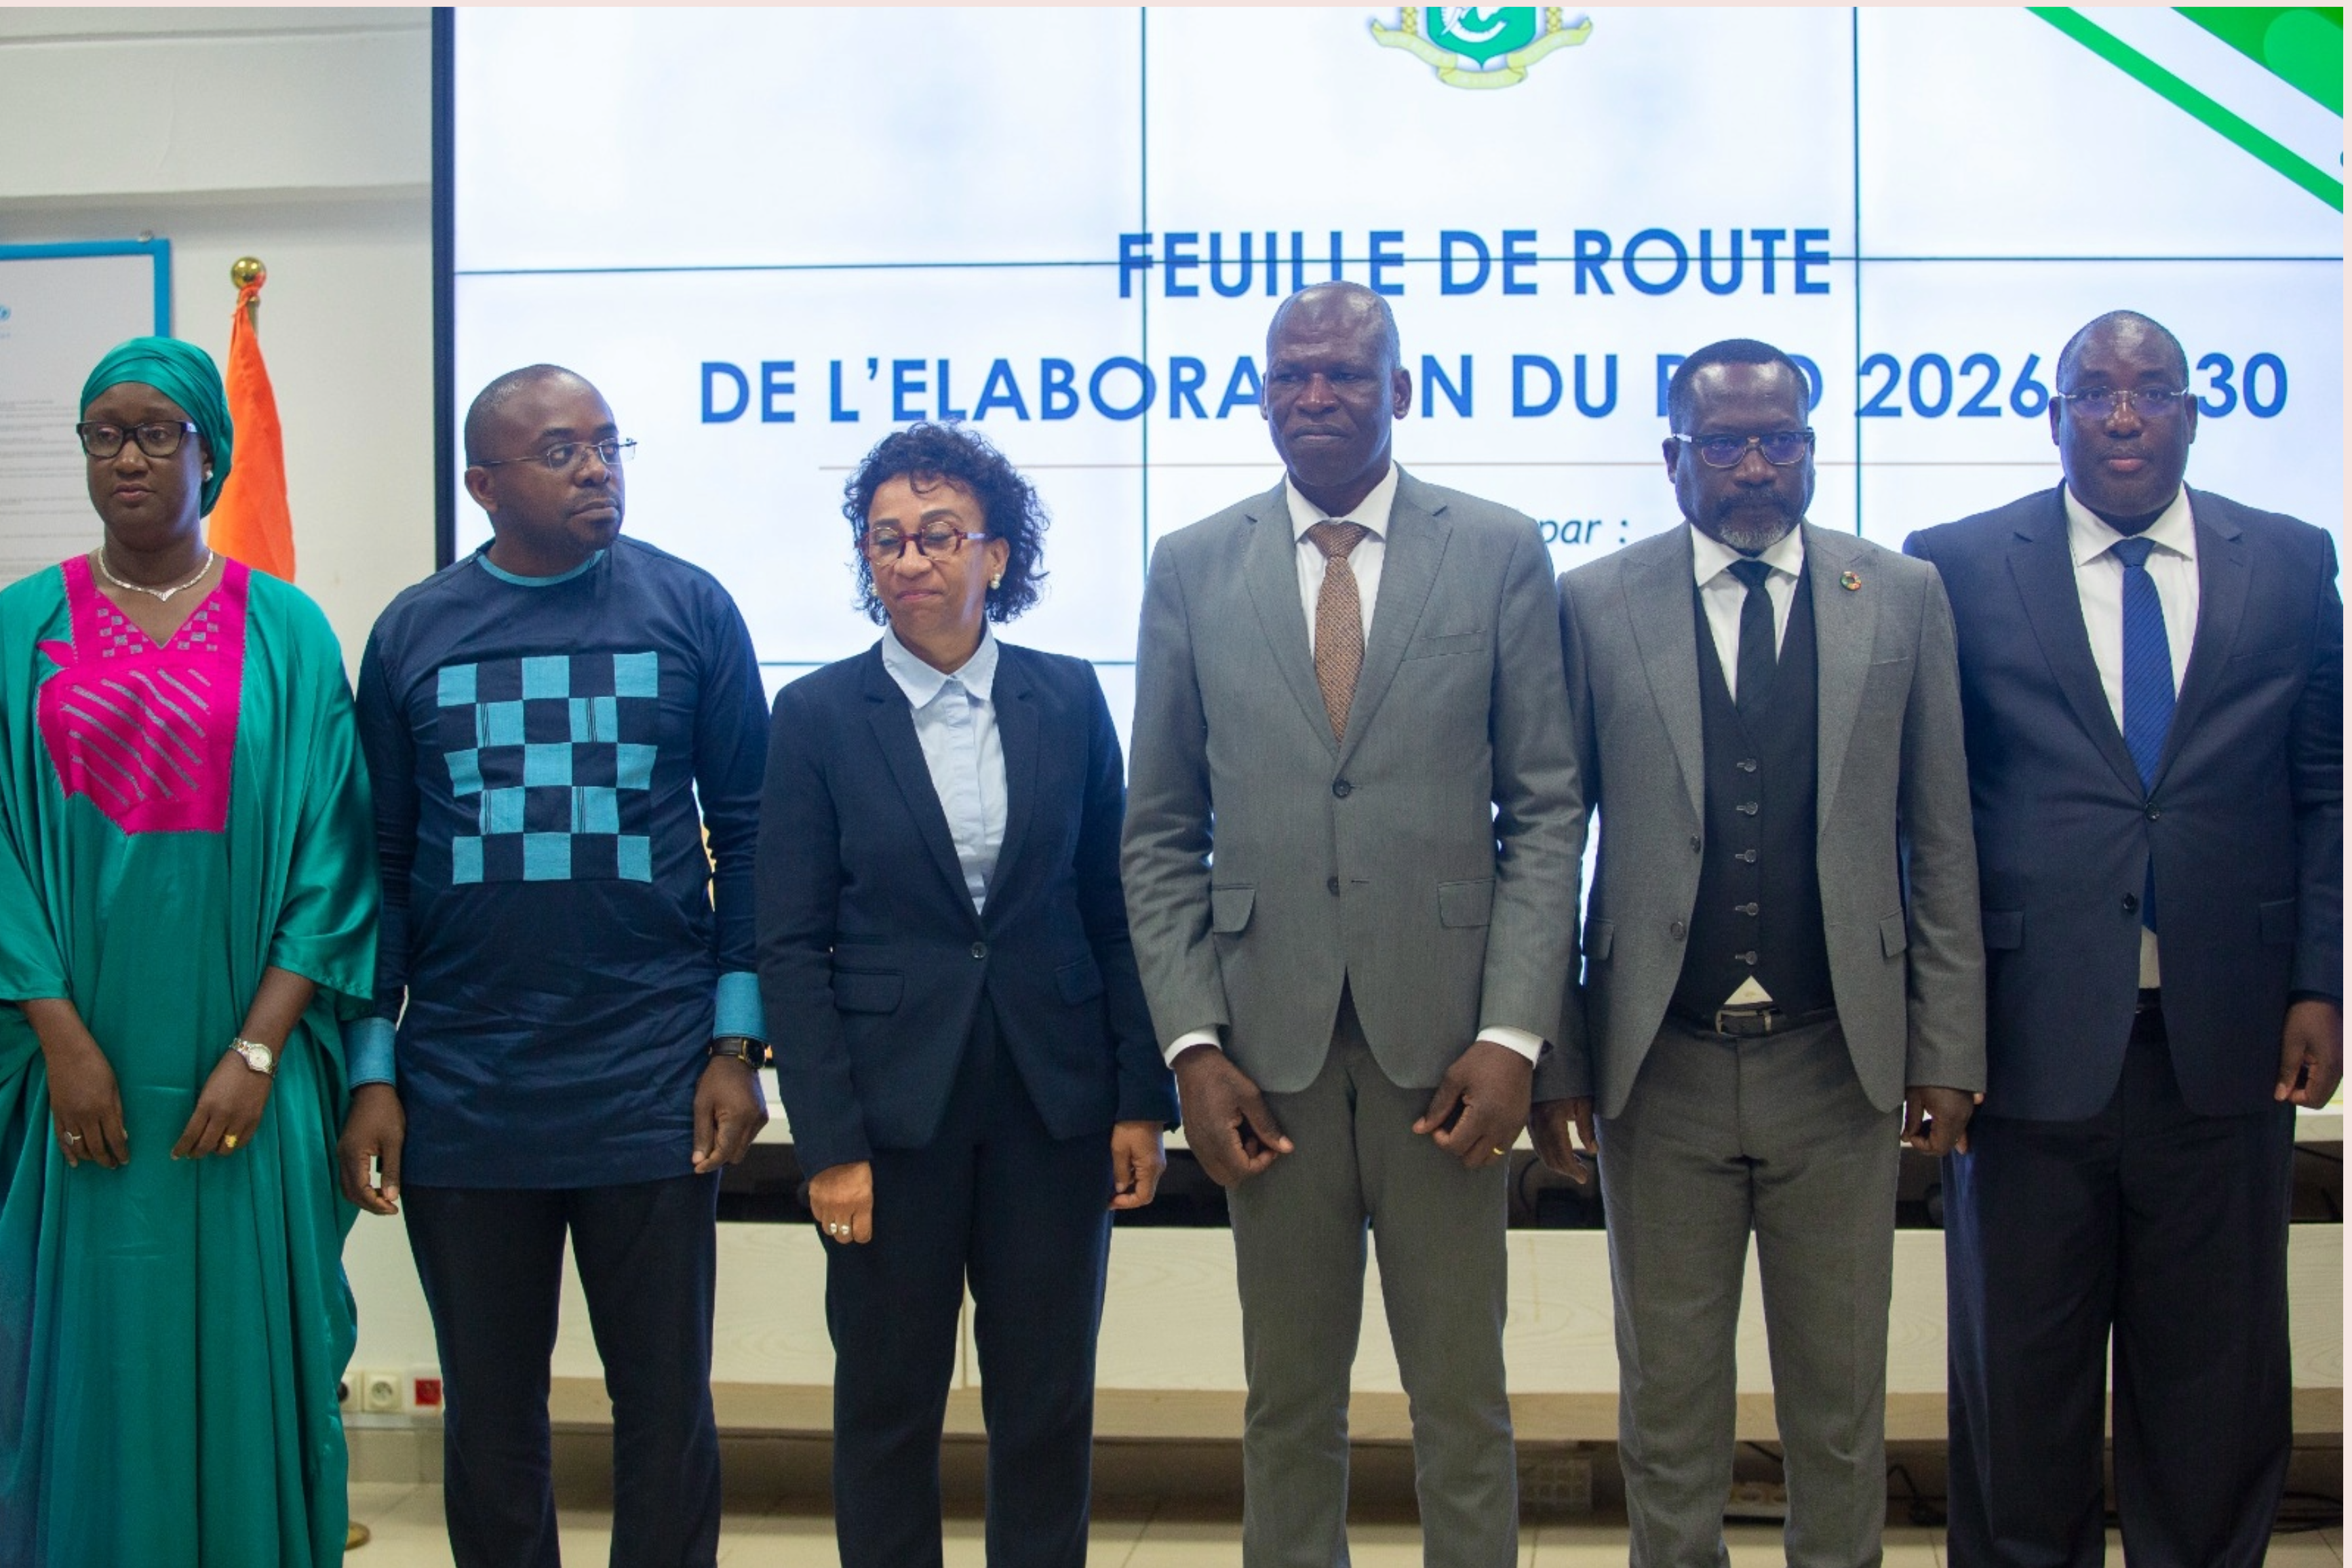 Relance de leur Programme de coopération : la Côte d’Ivoire et l’UNICEF préparent la tranche 2026-2030 du PCD